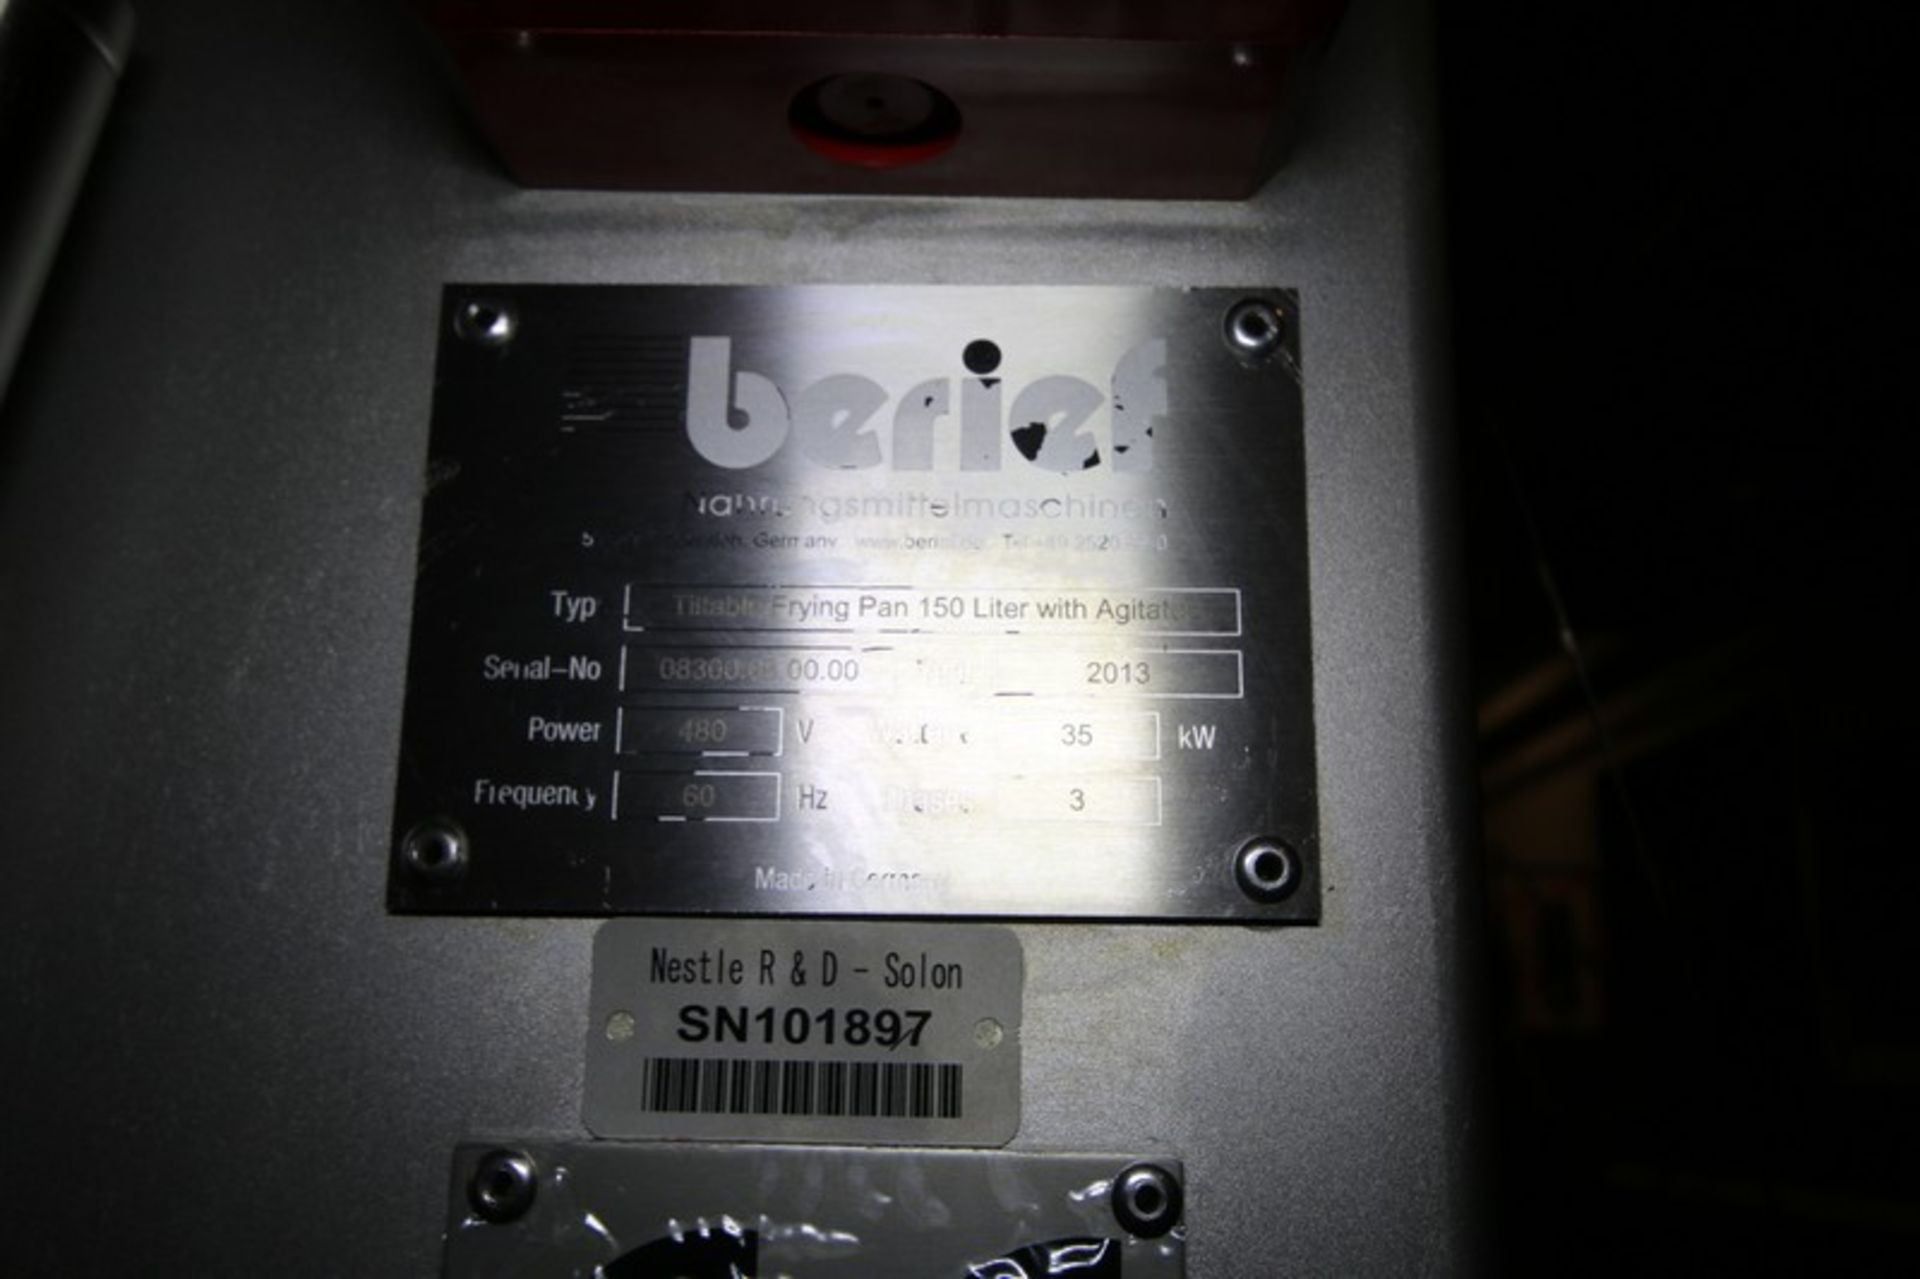 2013 Berief 150 Liter S/S Tilting Fryer Type Tiltable Frying Pan 150 Liter with Agitator, SN 08300. - Bild 7 aus 9